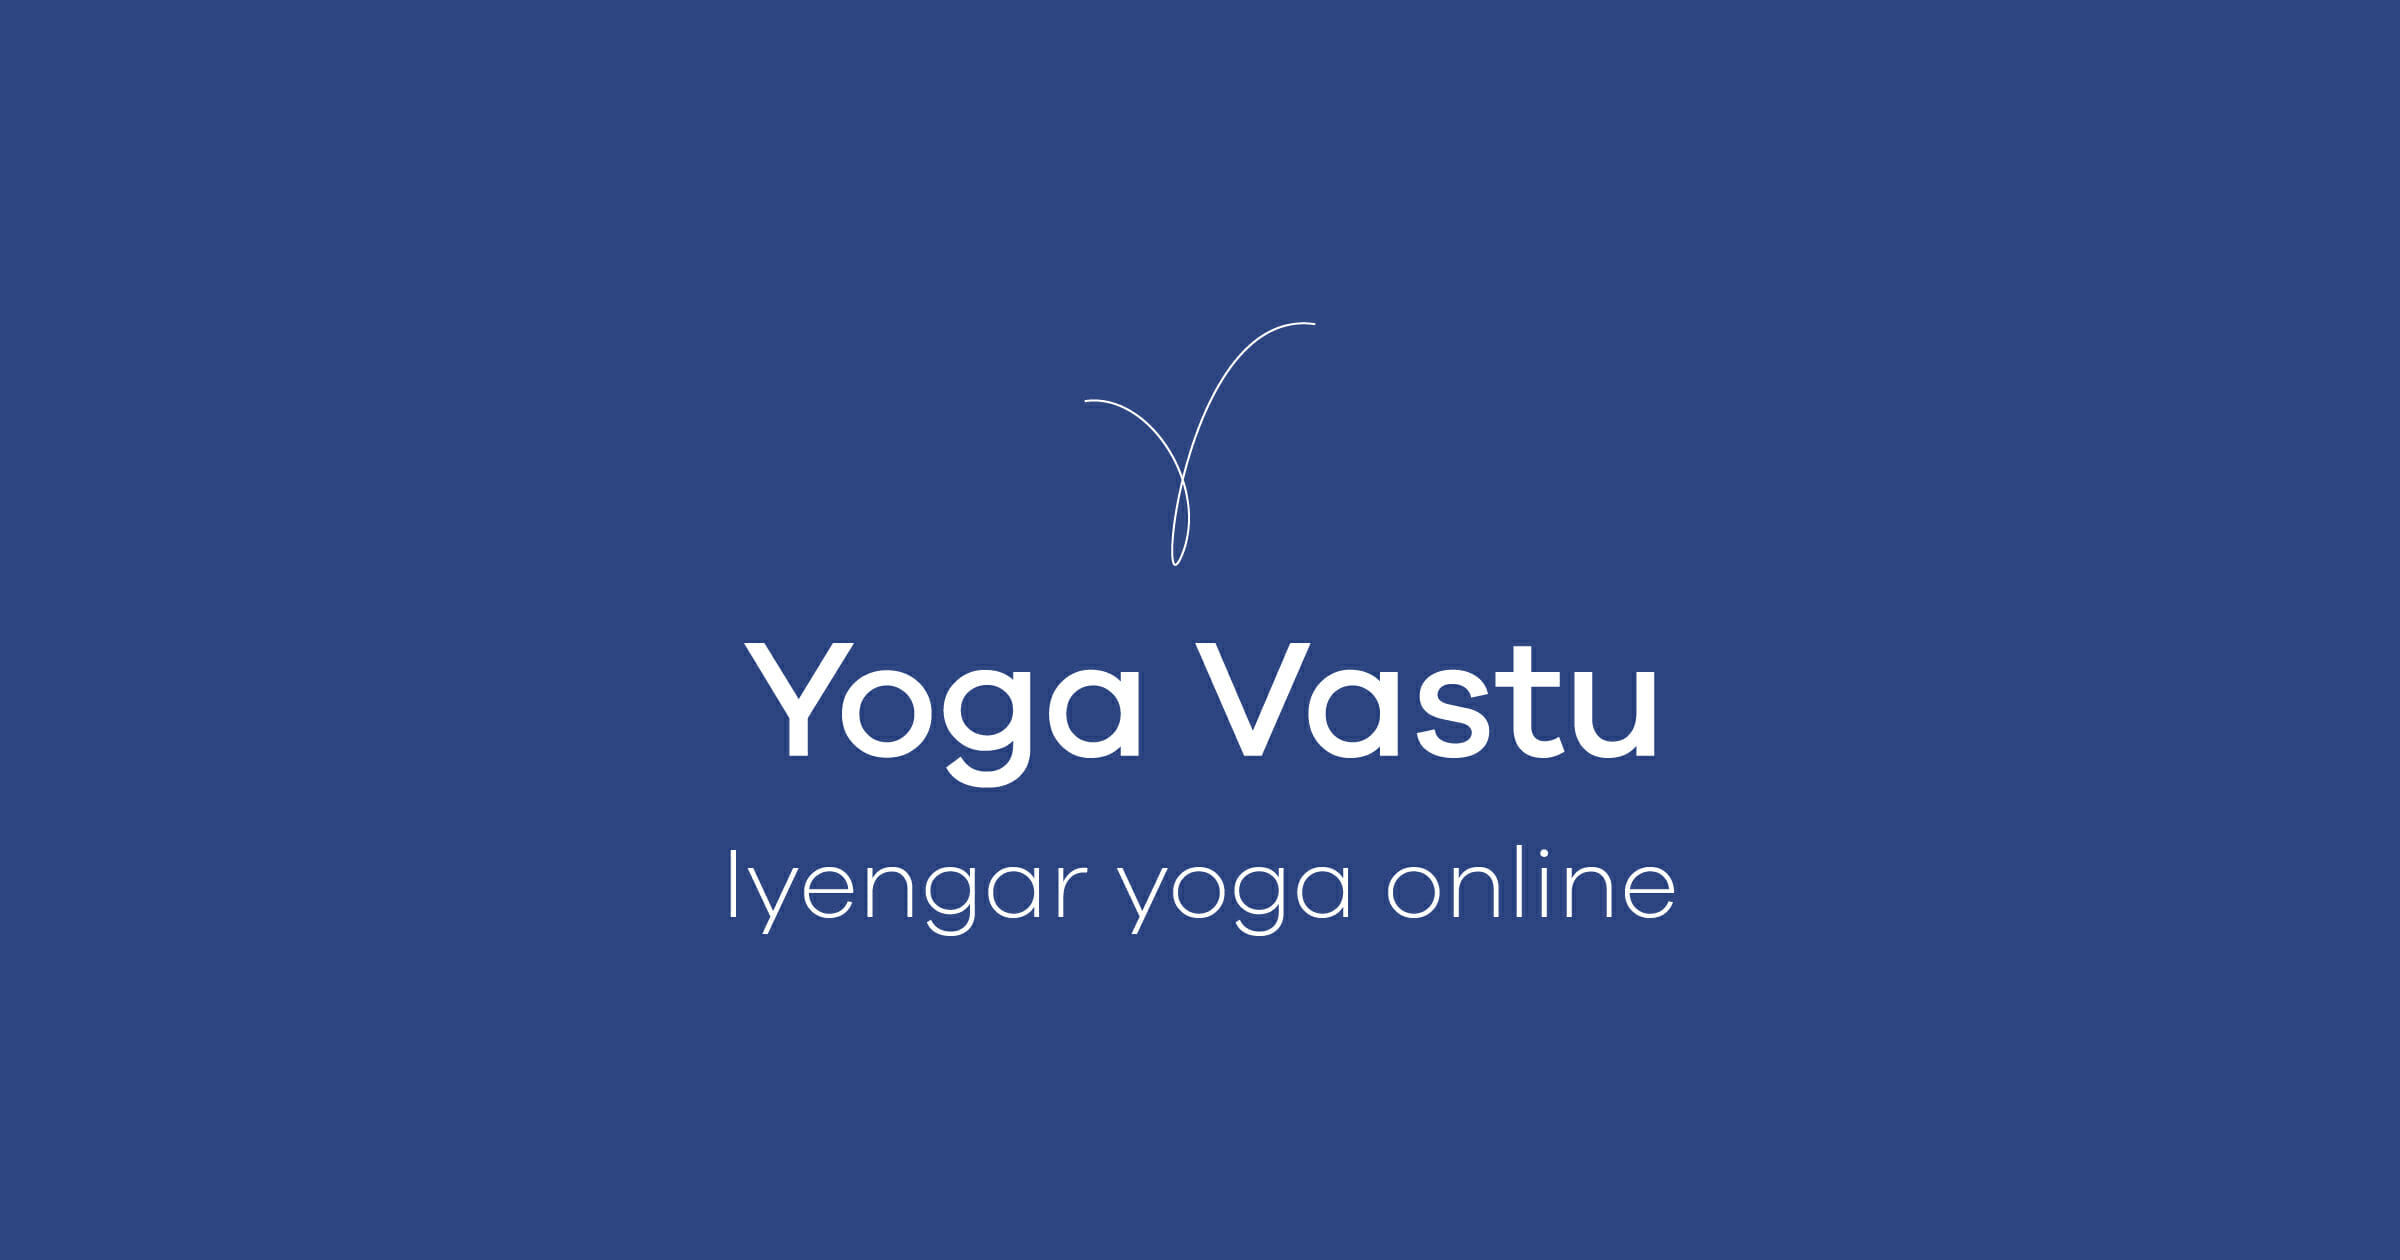 (c) Yogavastu.com